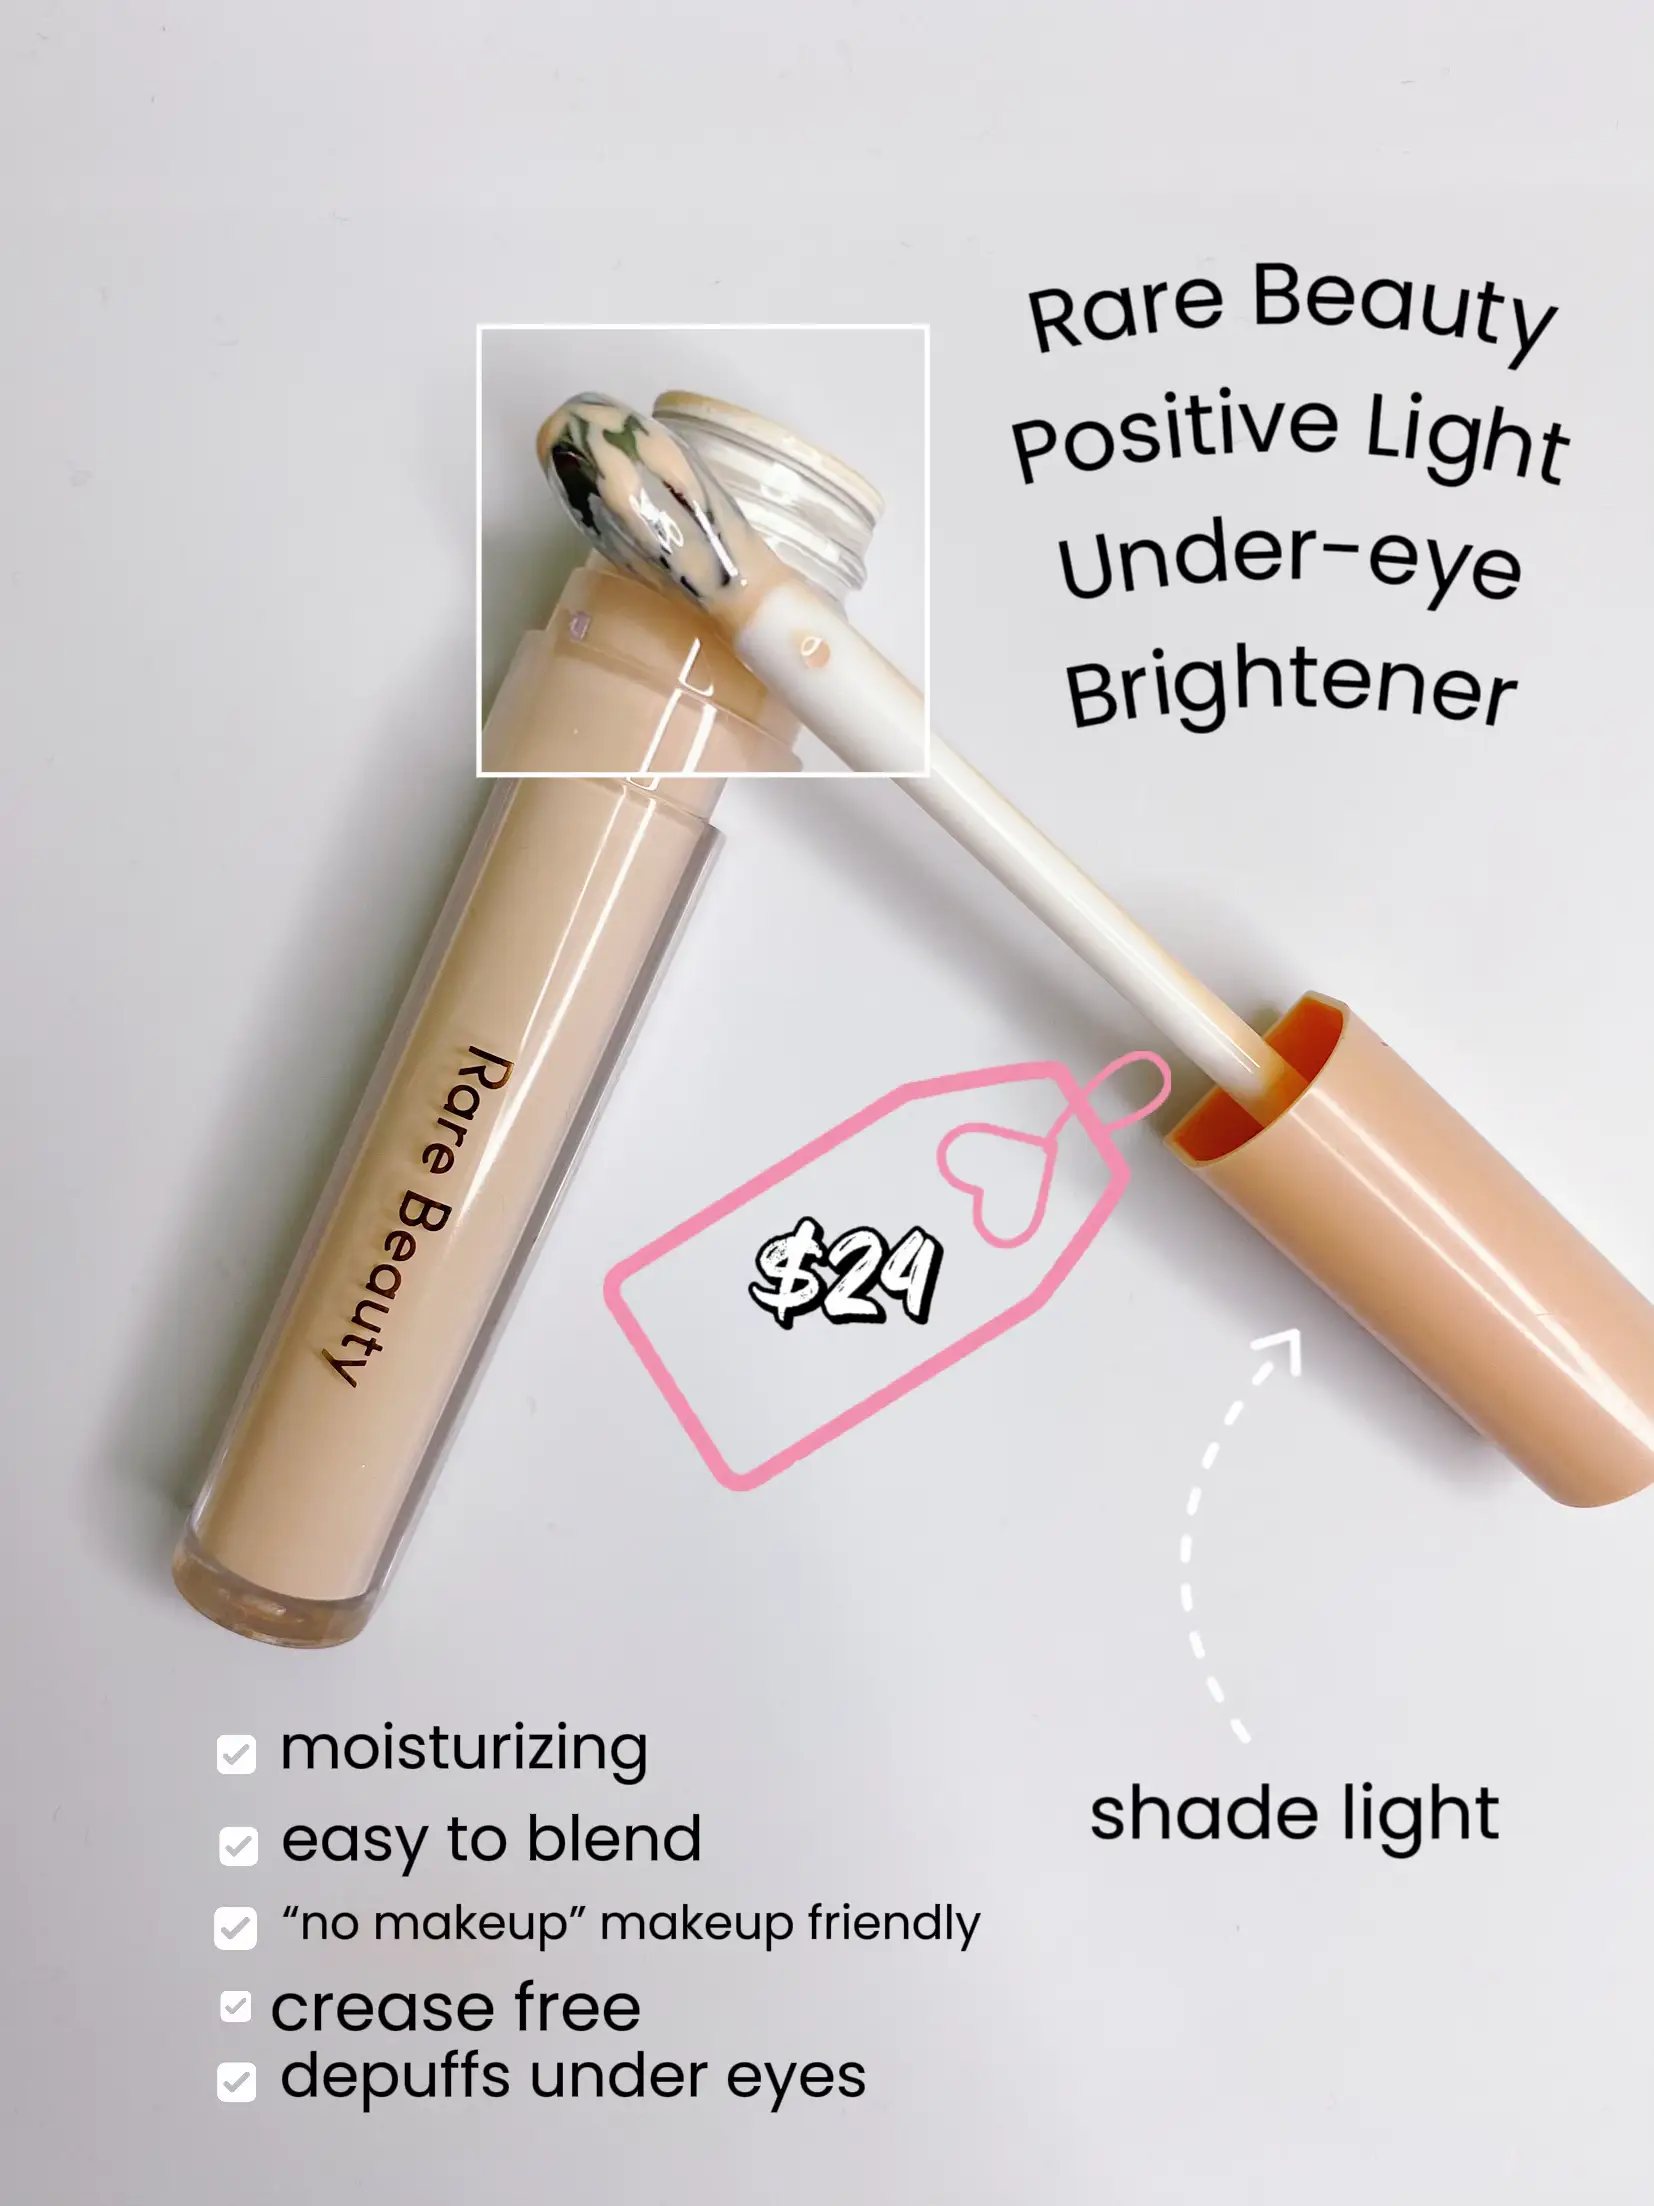 Recensione Correttore Rare Beauty Positive Light Under Eye Brightener